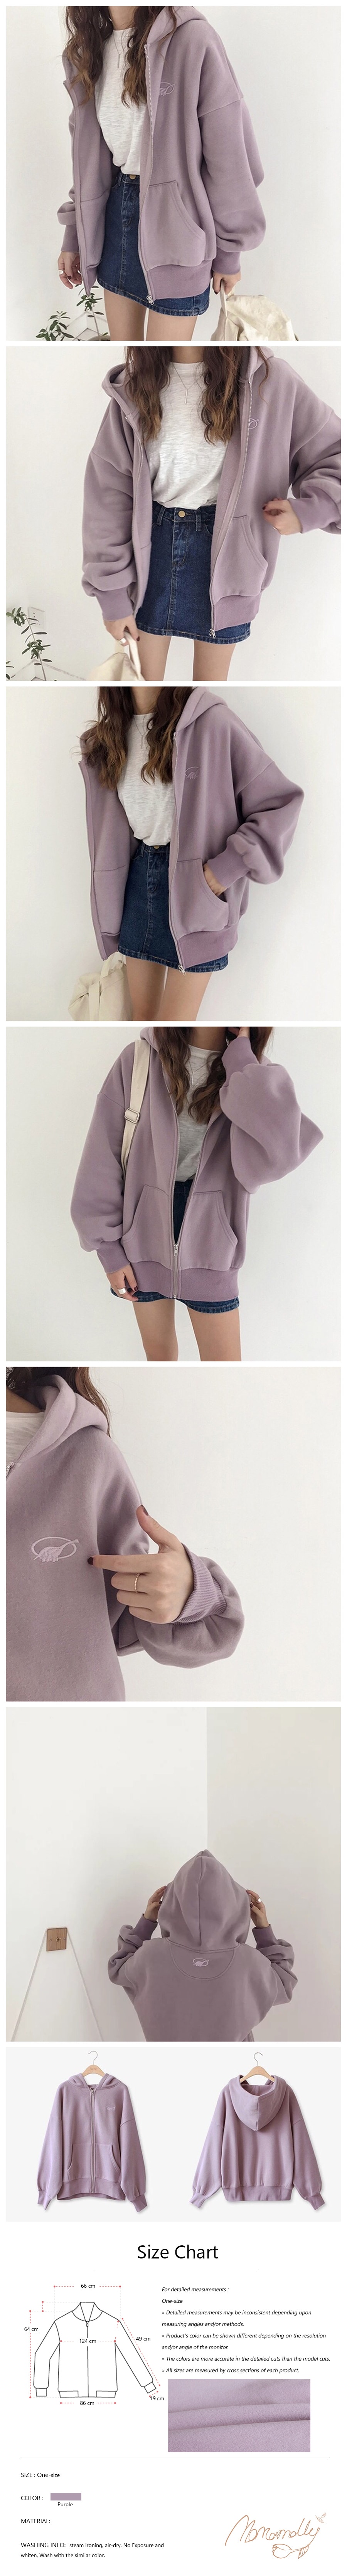 Korean chic fleece short hooded zipper sweater Purple One-size